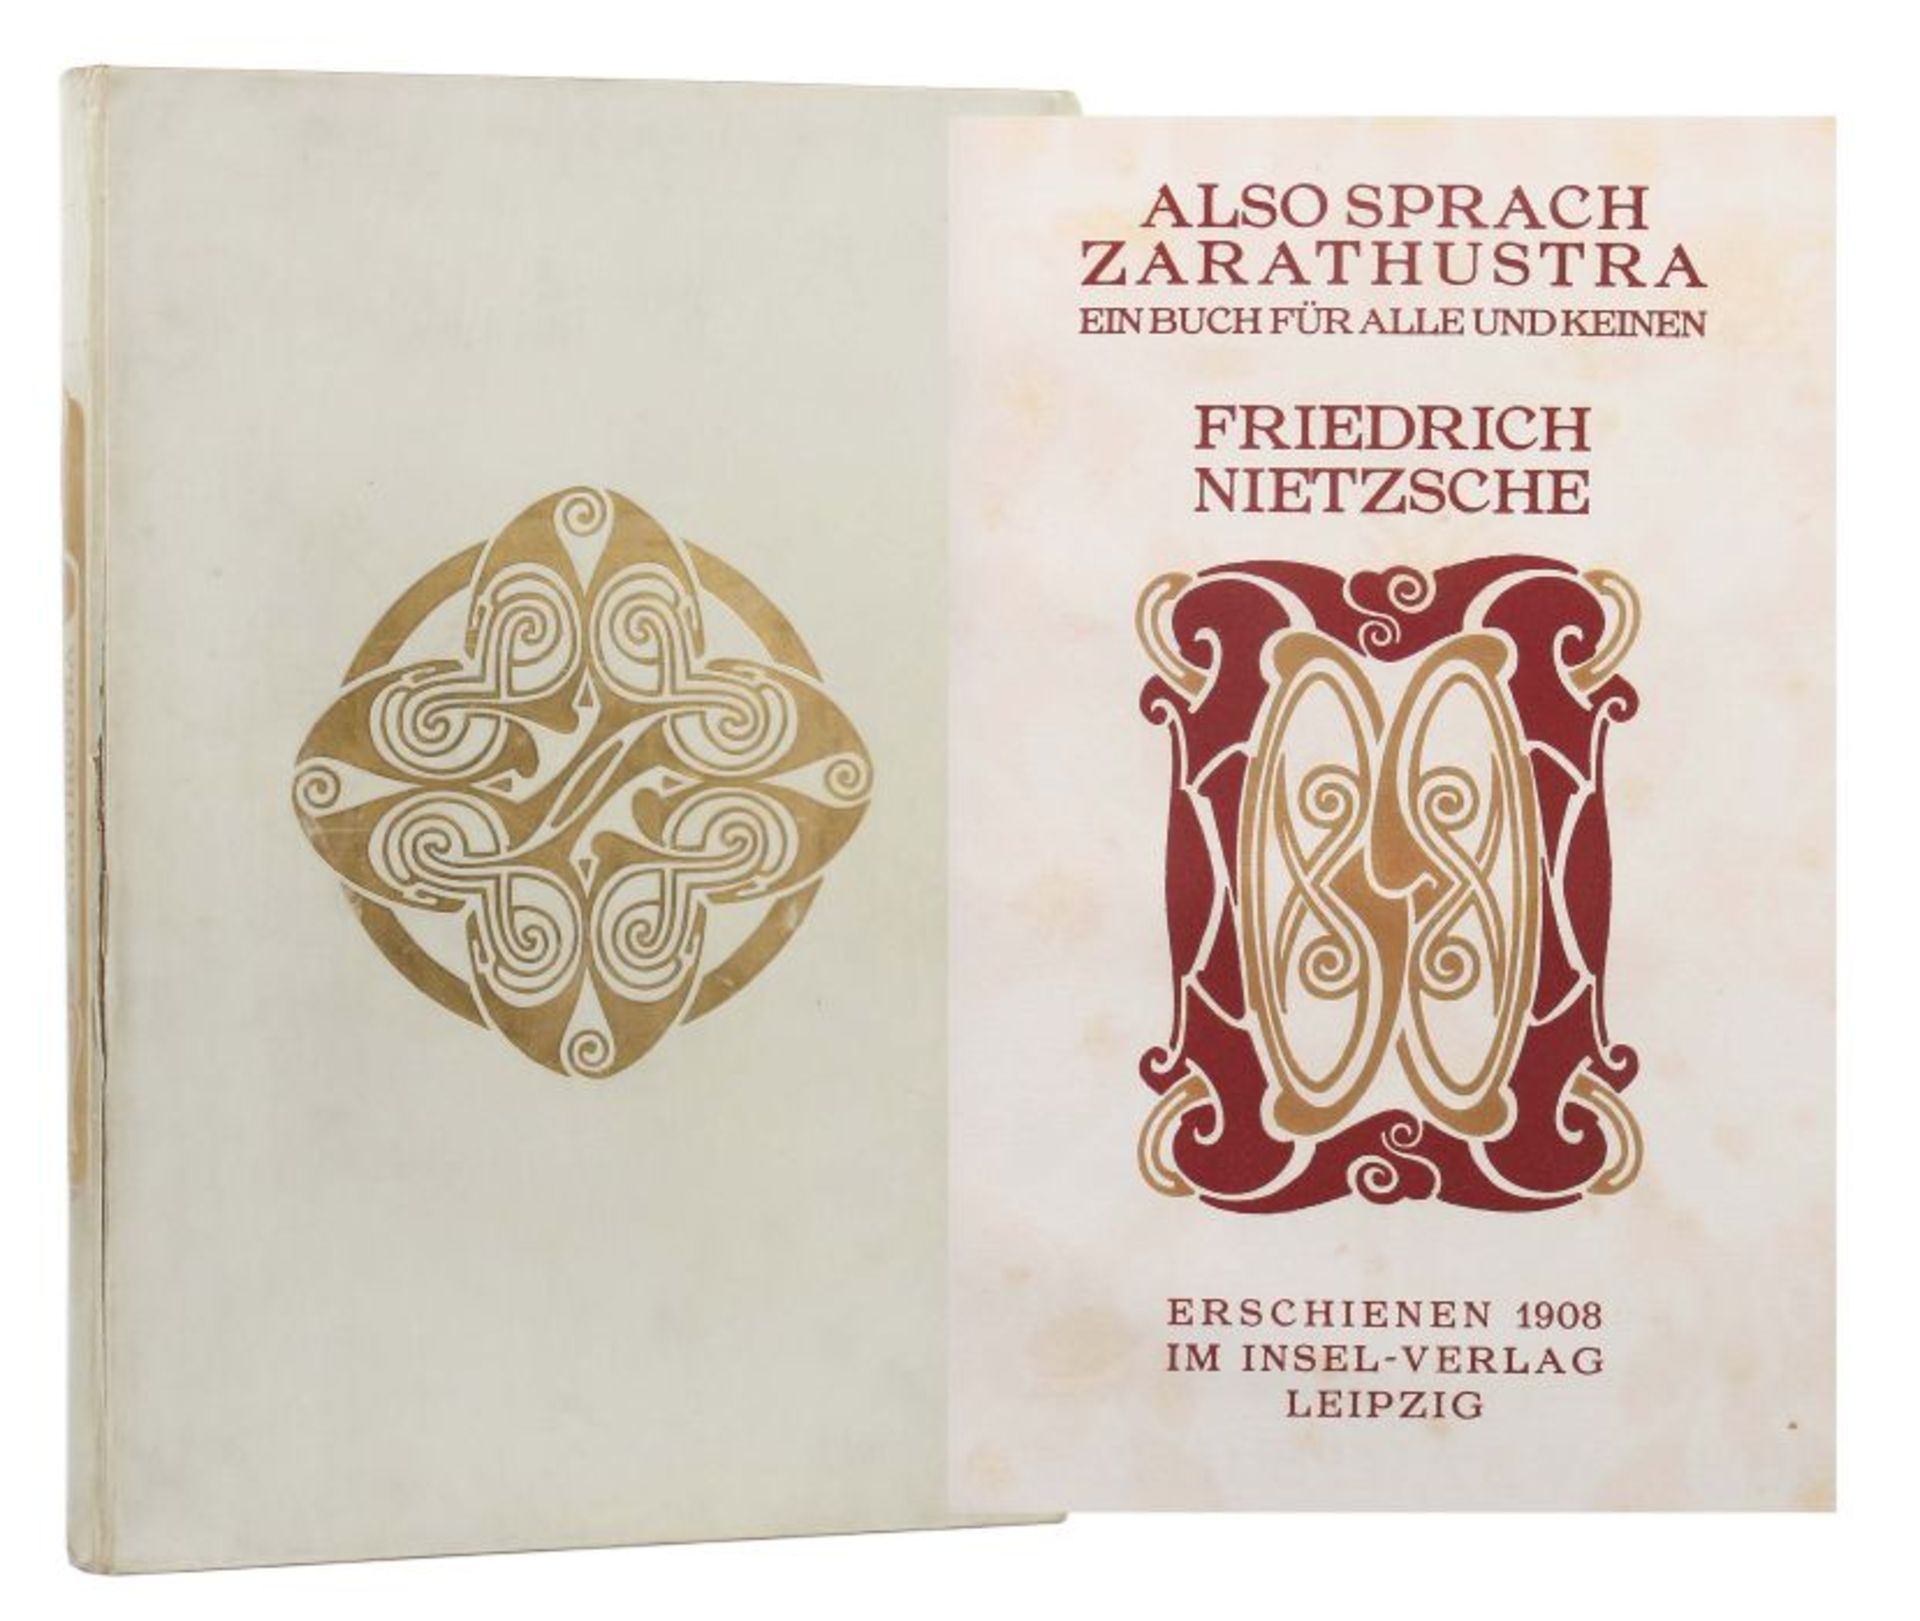 Nietzsche, FriedrichAlso sprach Zarathustra - Ein Buch für alle und keinen, Leipzig, Insel-Verlag,